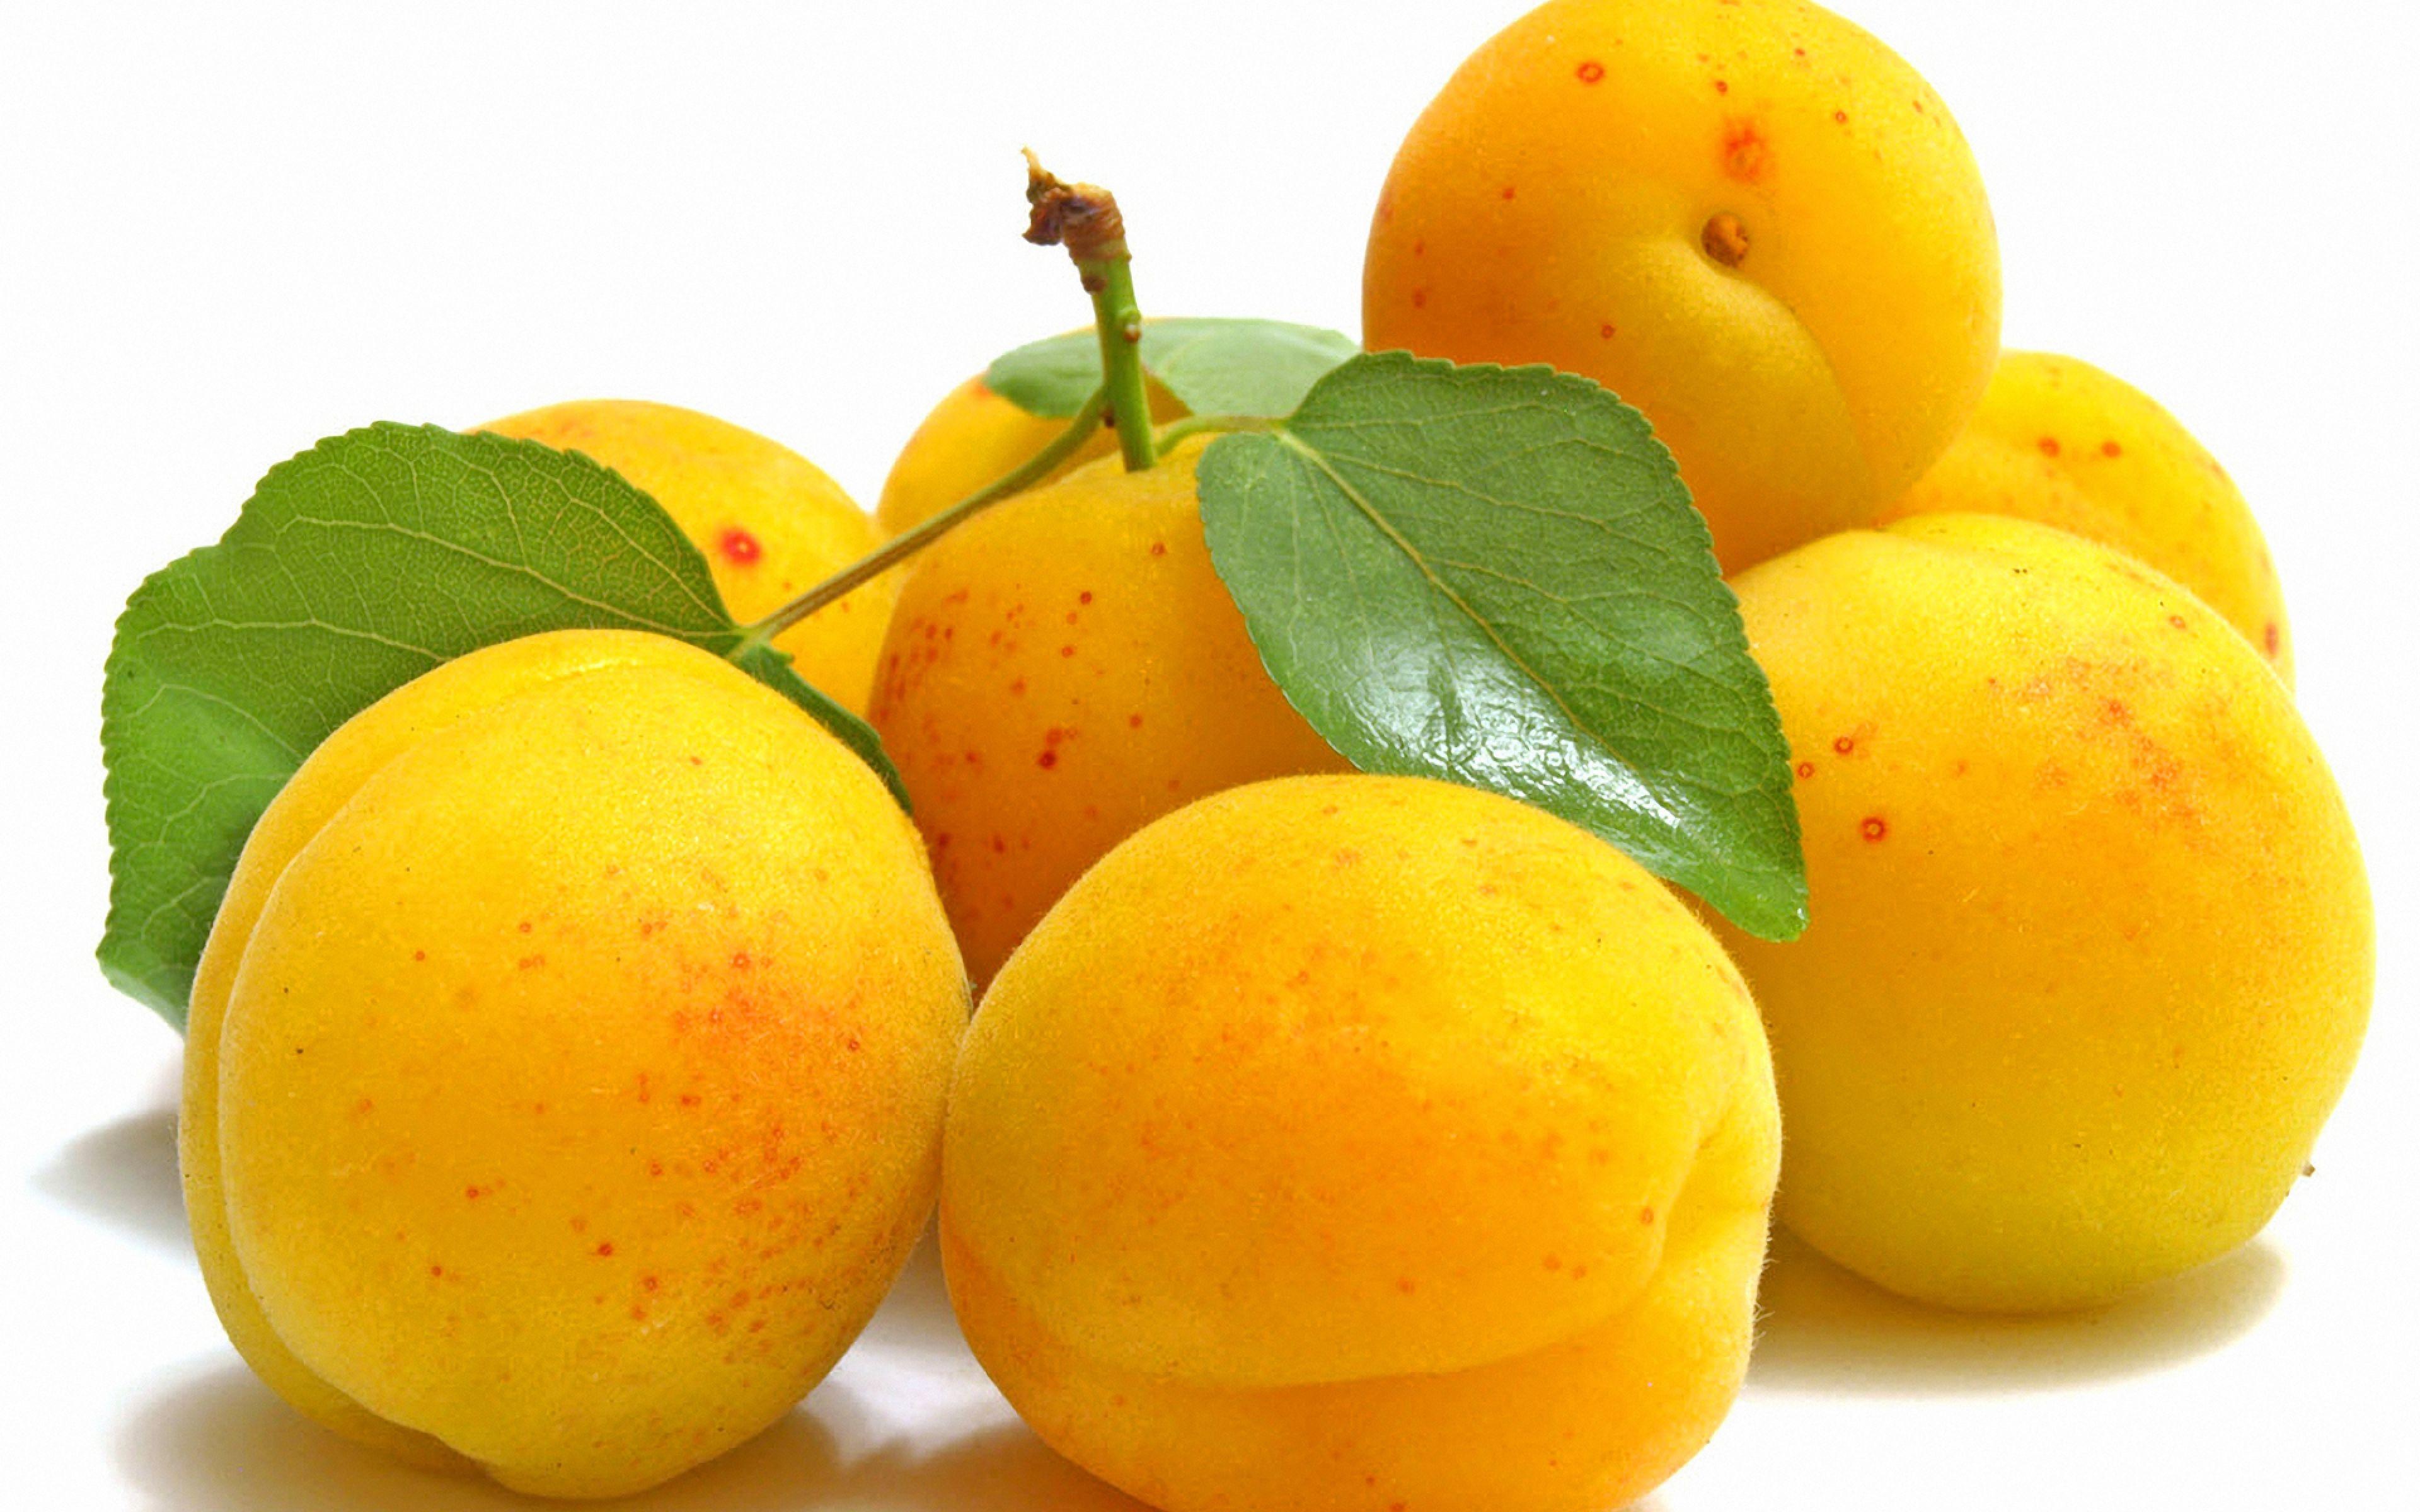 Download HD Wallpaper Apricot Yellow Ripe Fruit